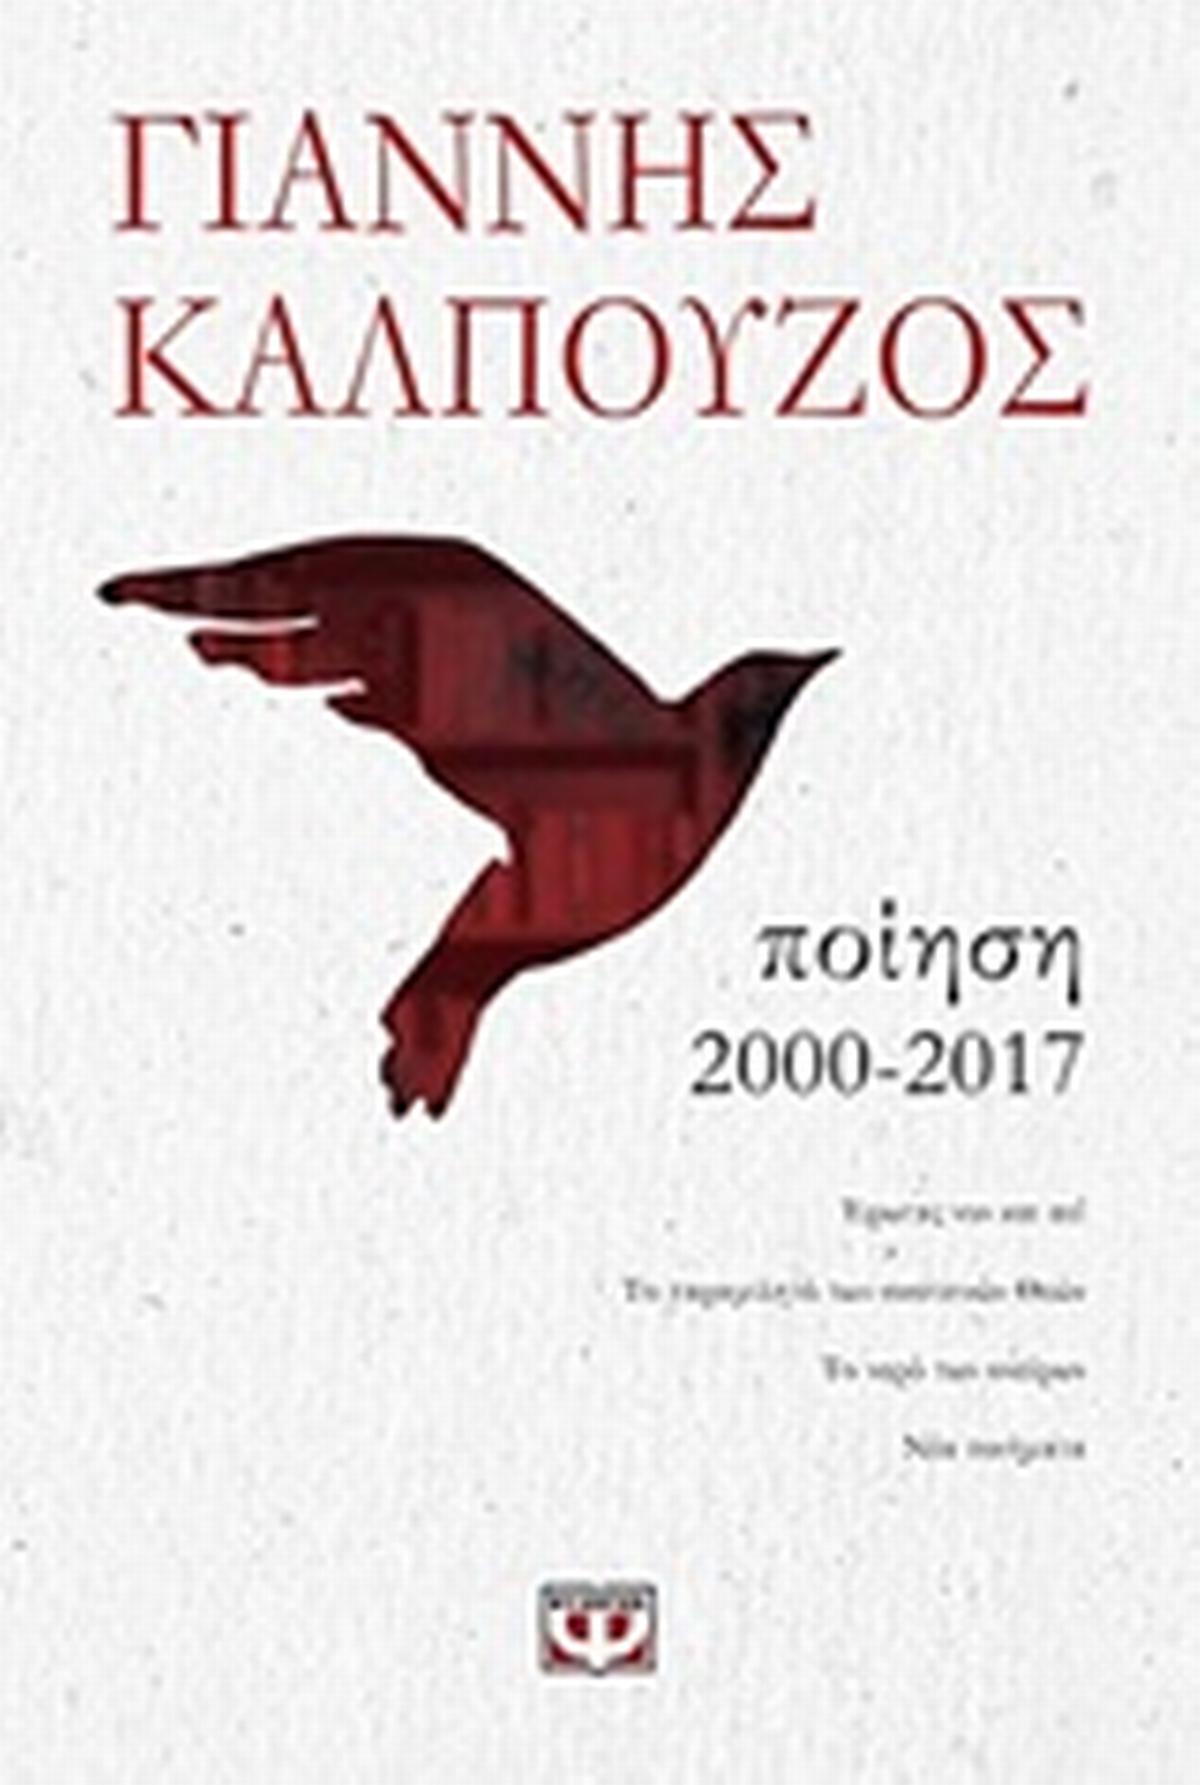 Ποίηση 2000-2017